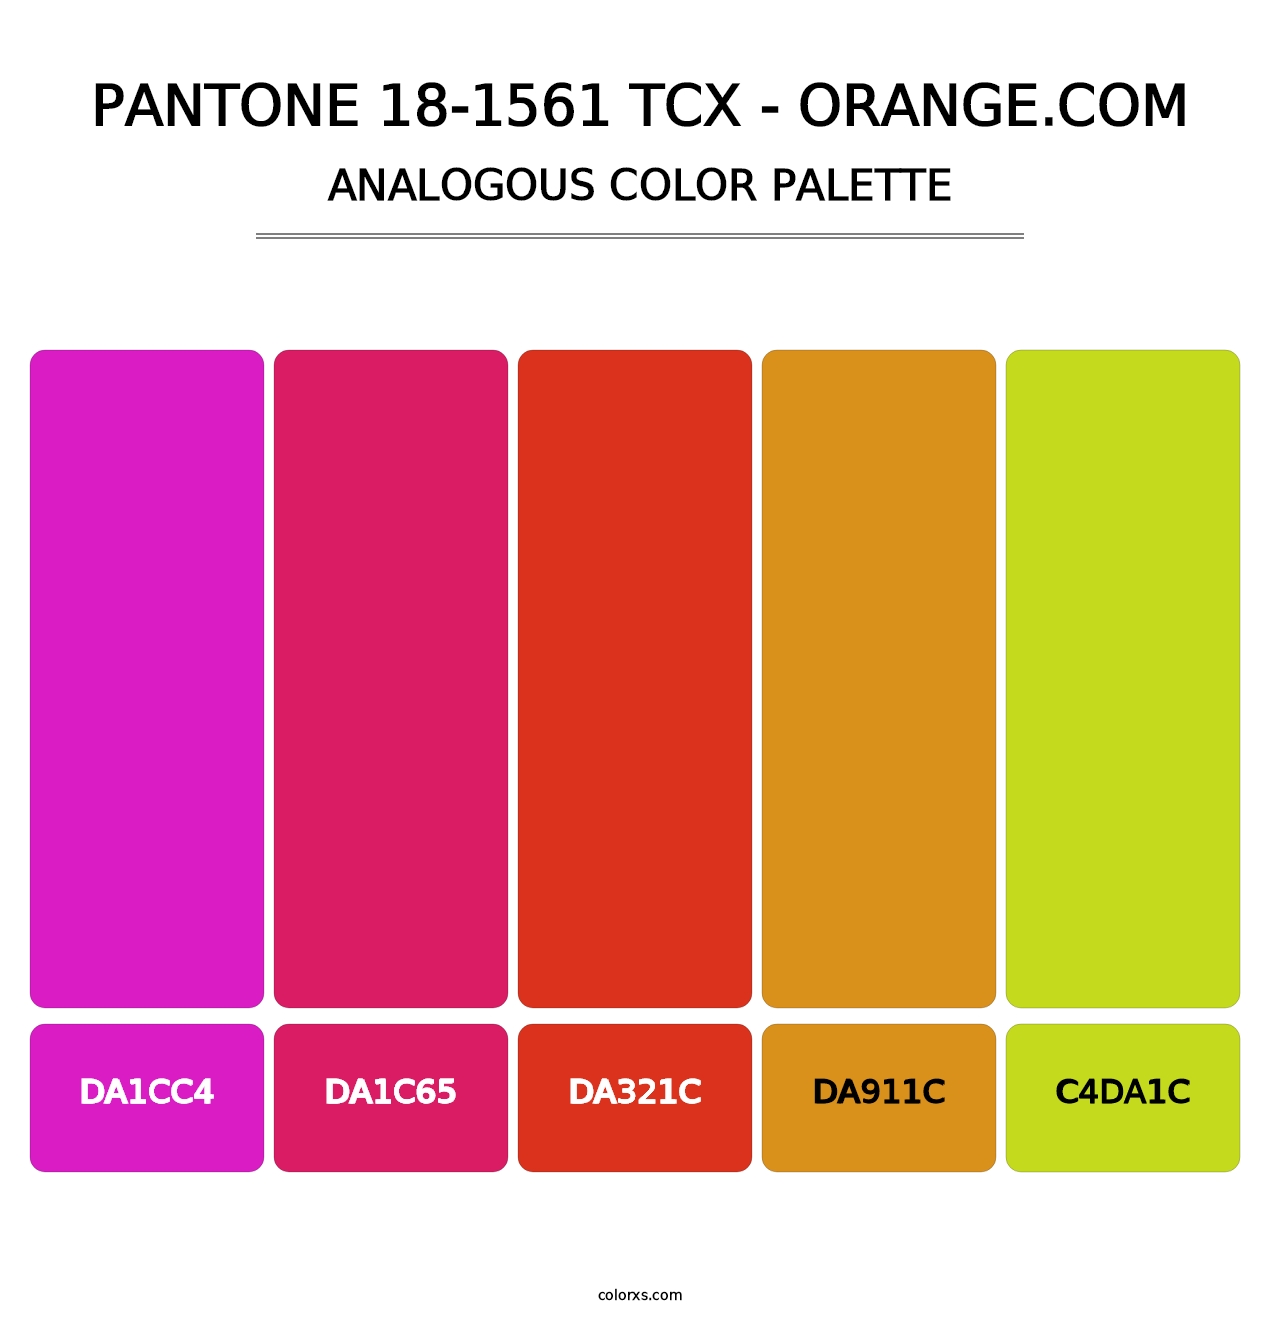 PANTONE 18-1561 TCX - Orange.com - Analogous Color Palette